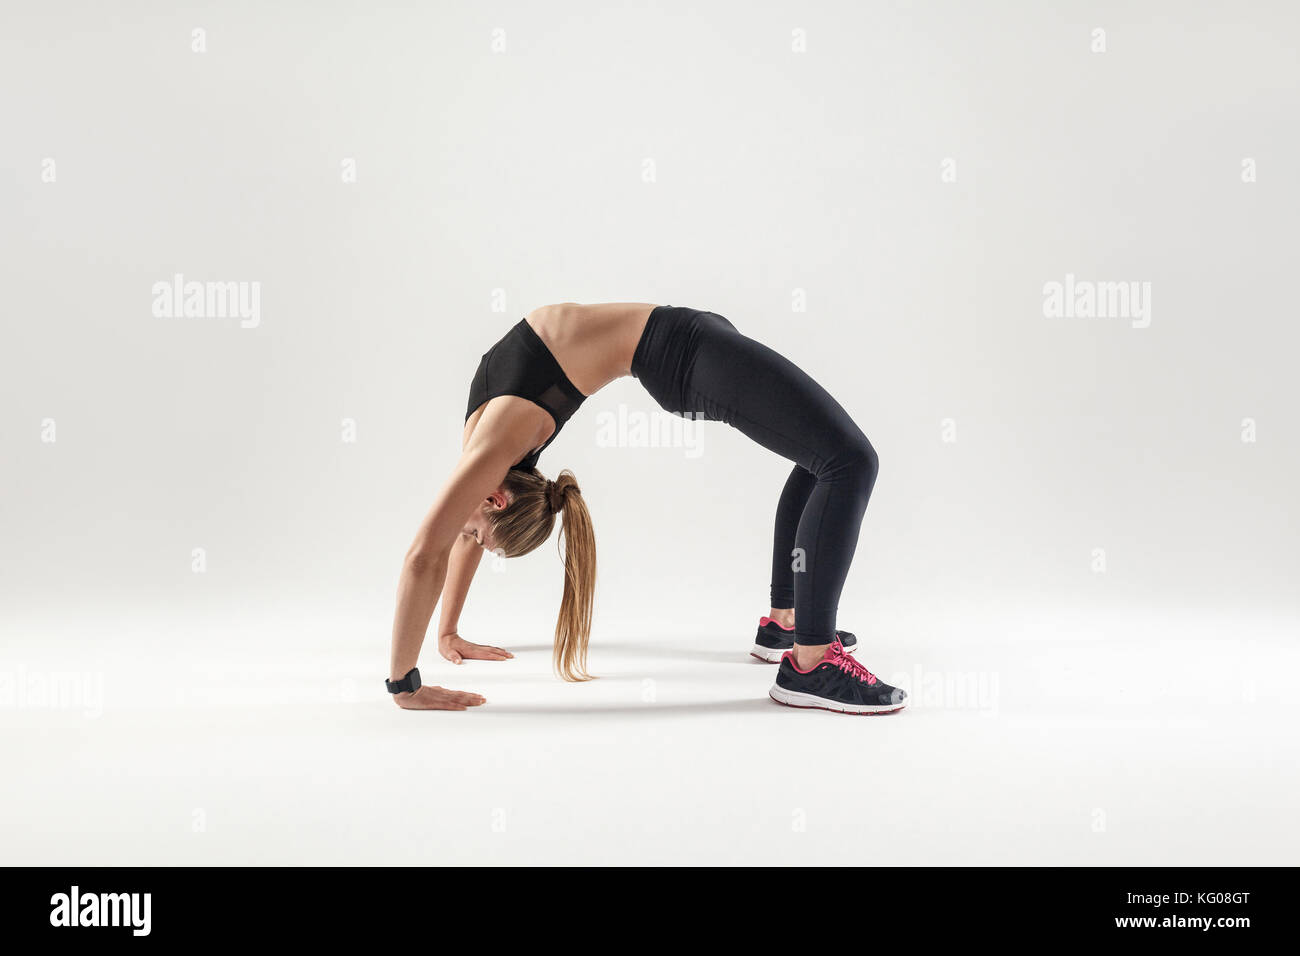 Pont acrobatique. blonde woman standing in bridge. fitness concept. studio shot Banque D'Images